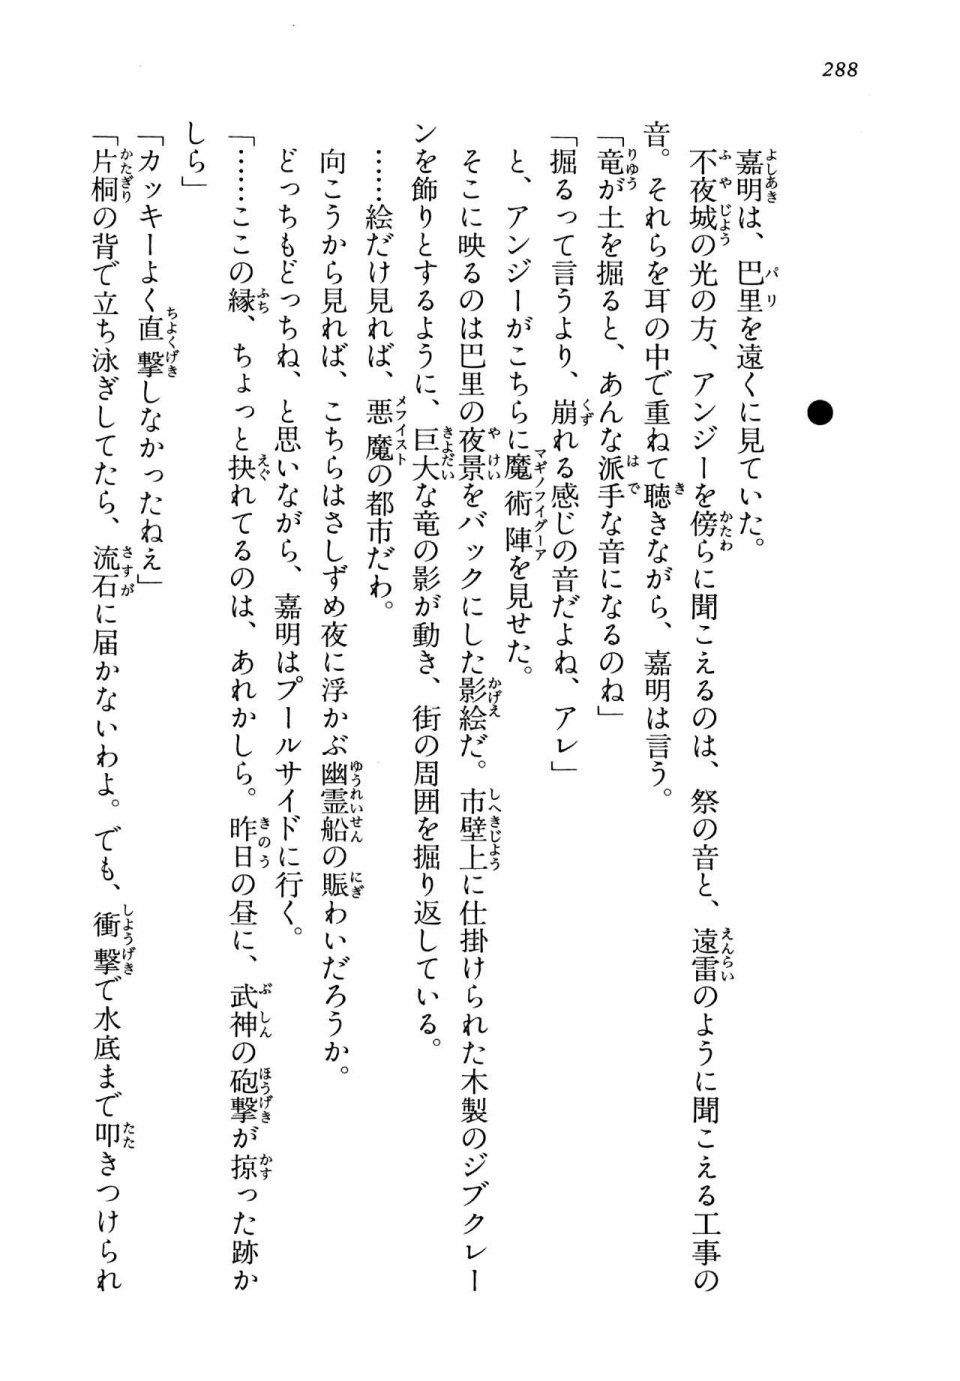 Kyoukai Senjou no Horizon LN Vol 13(6A) - Photo #288